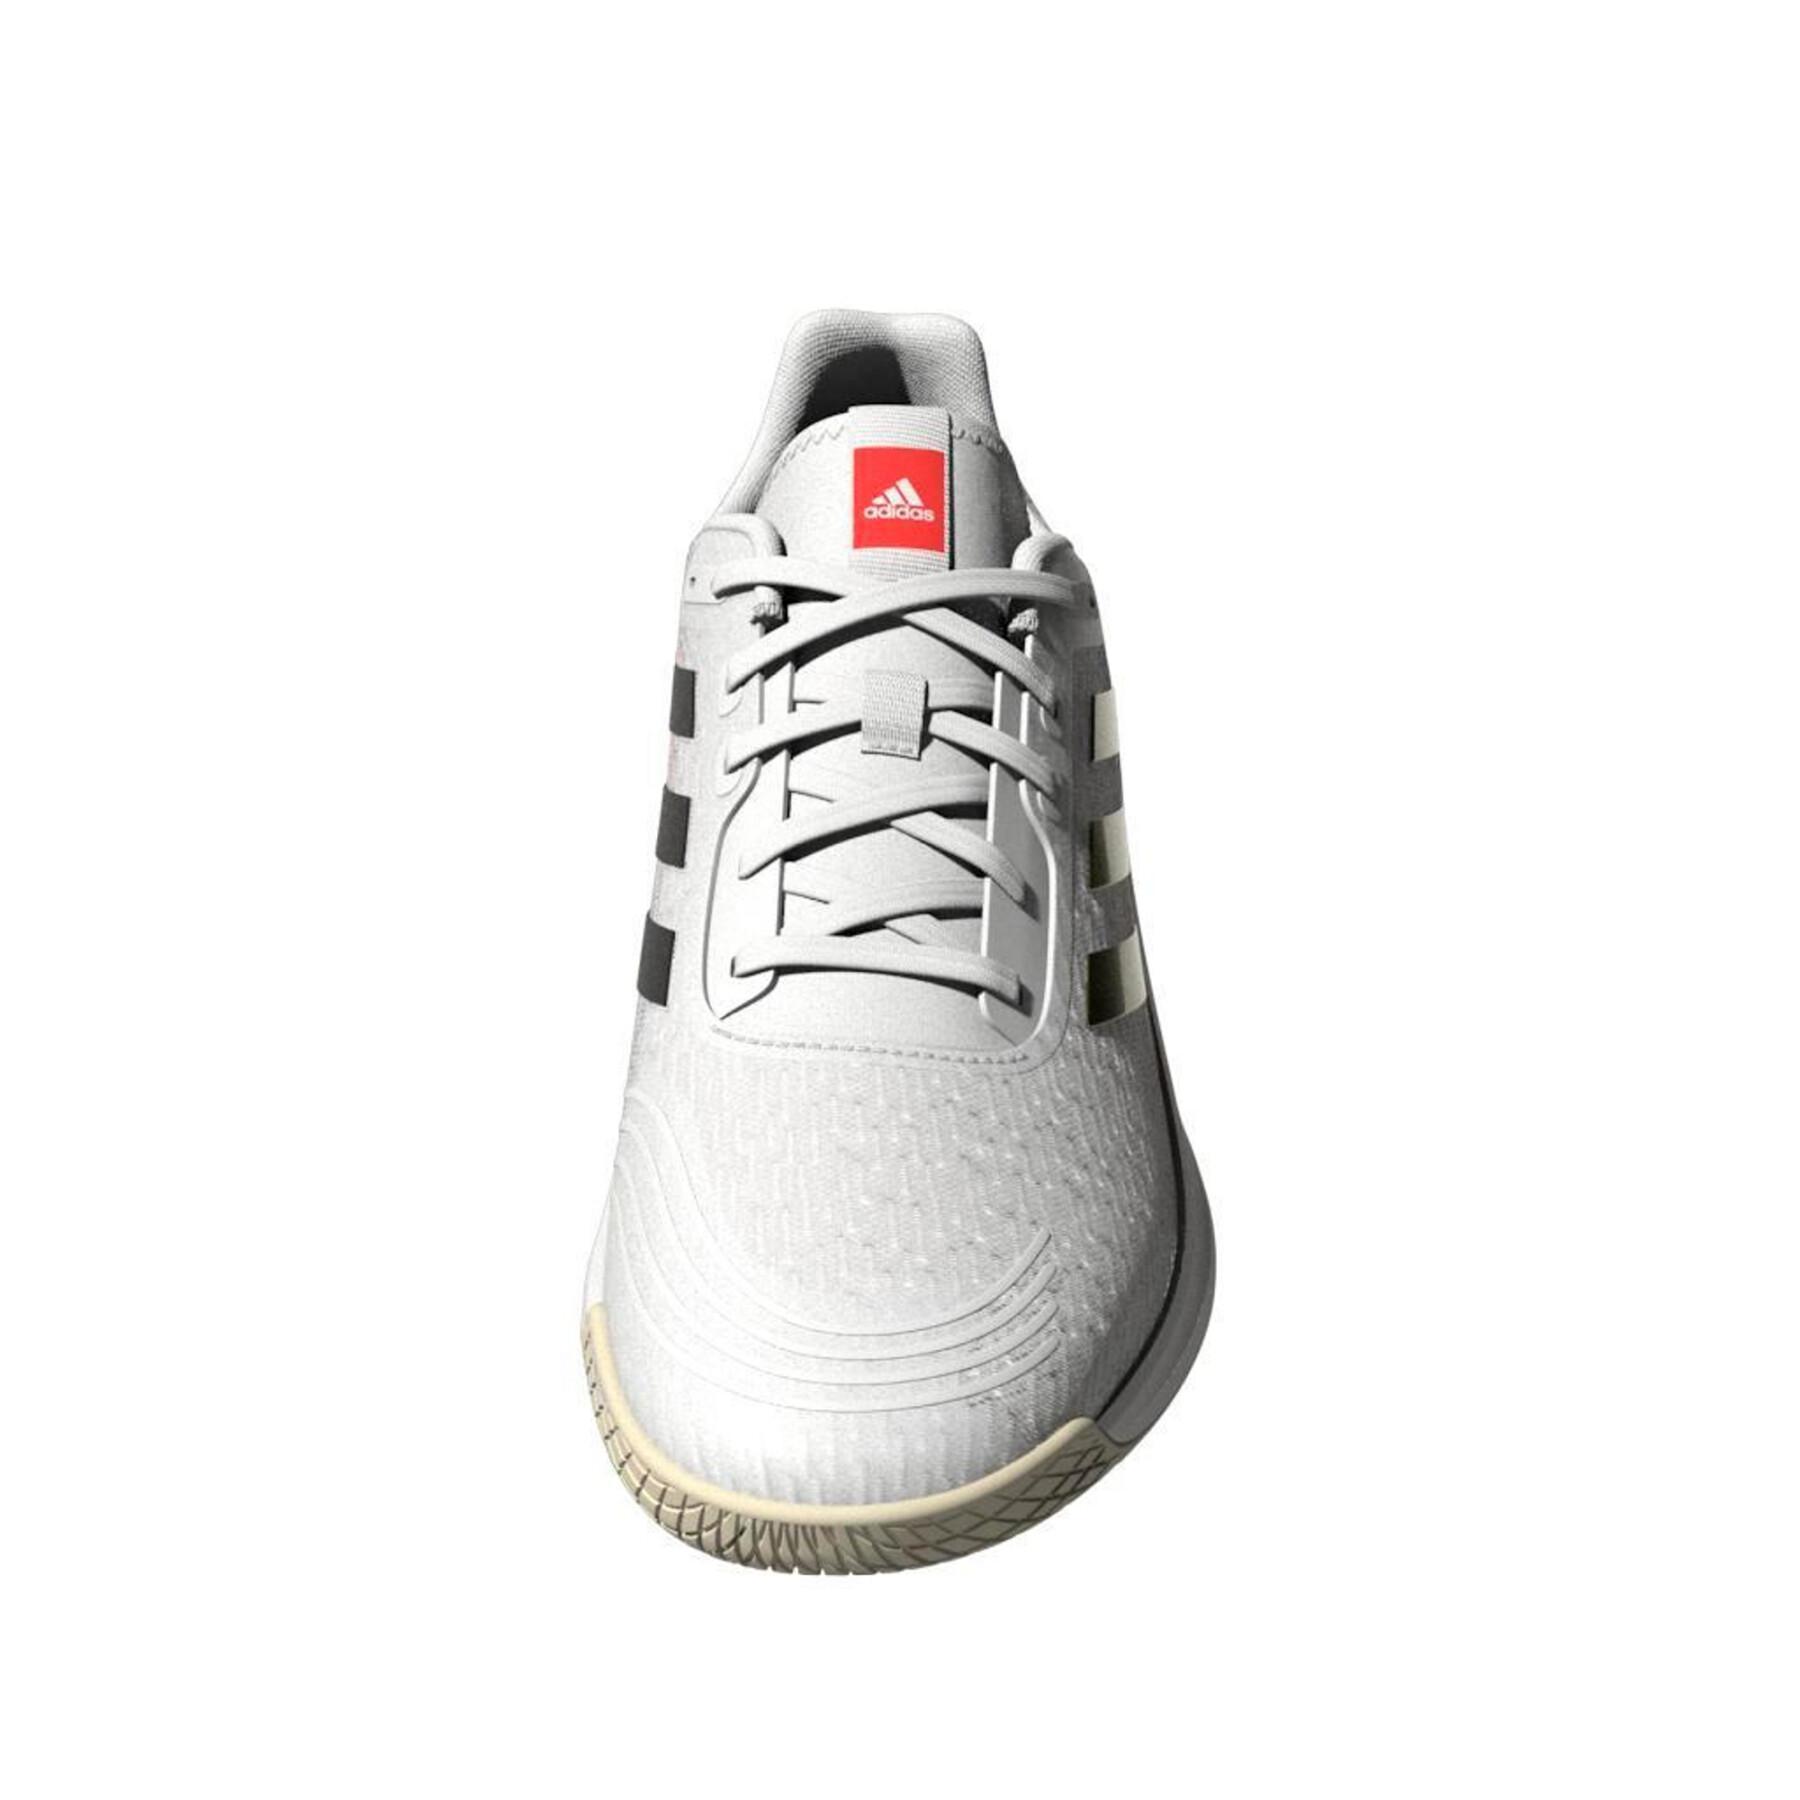 Damskie buty do siatkówki adidas Novaflight Tokyo